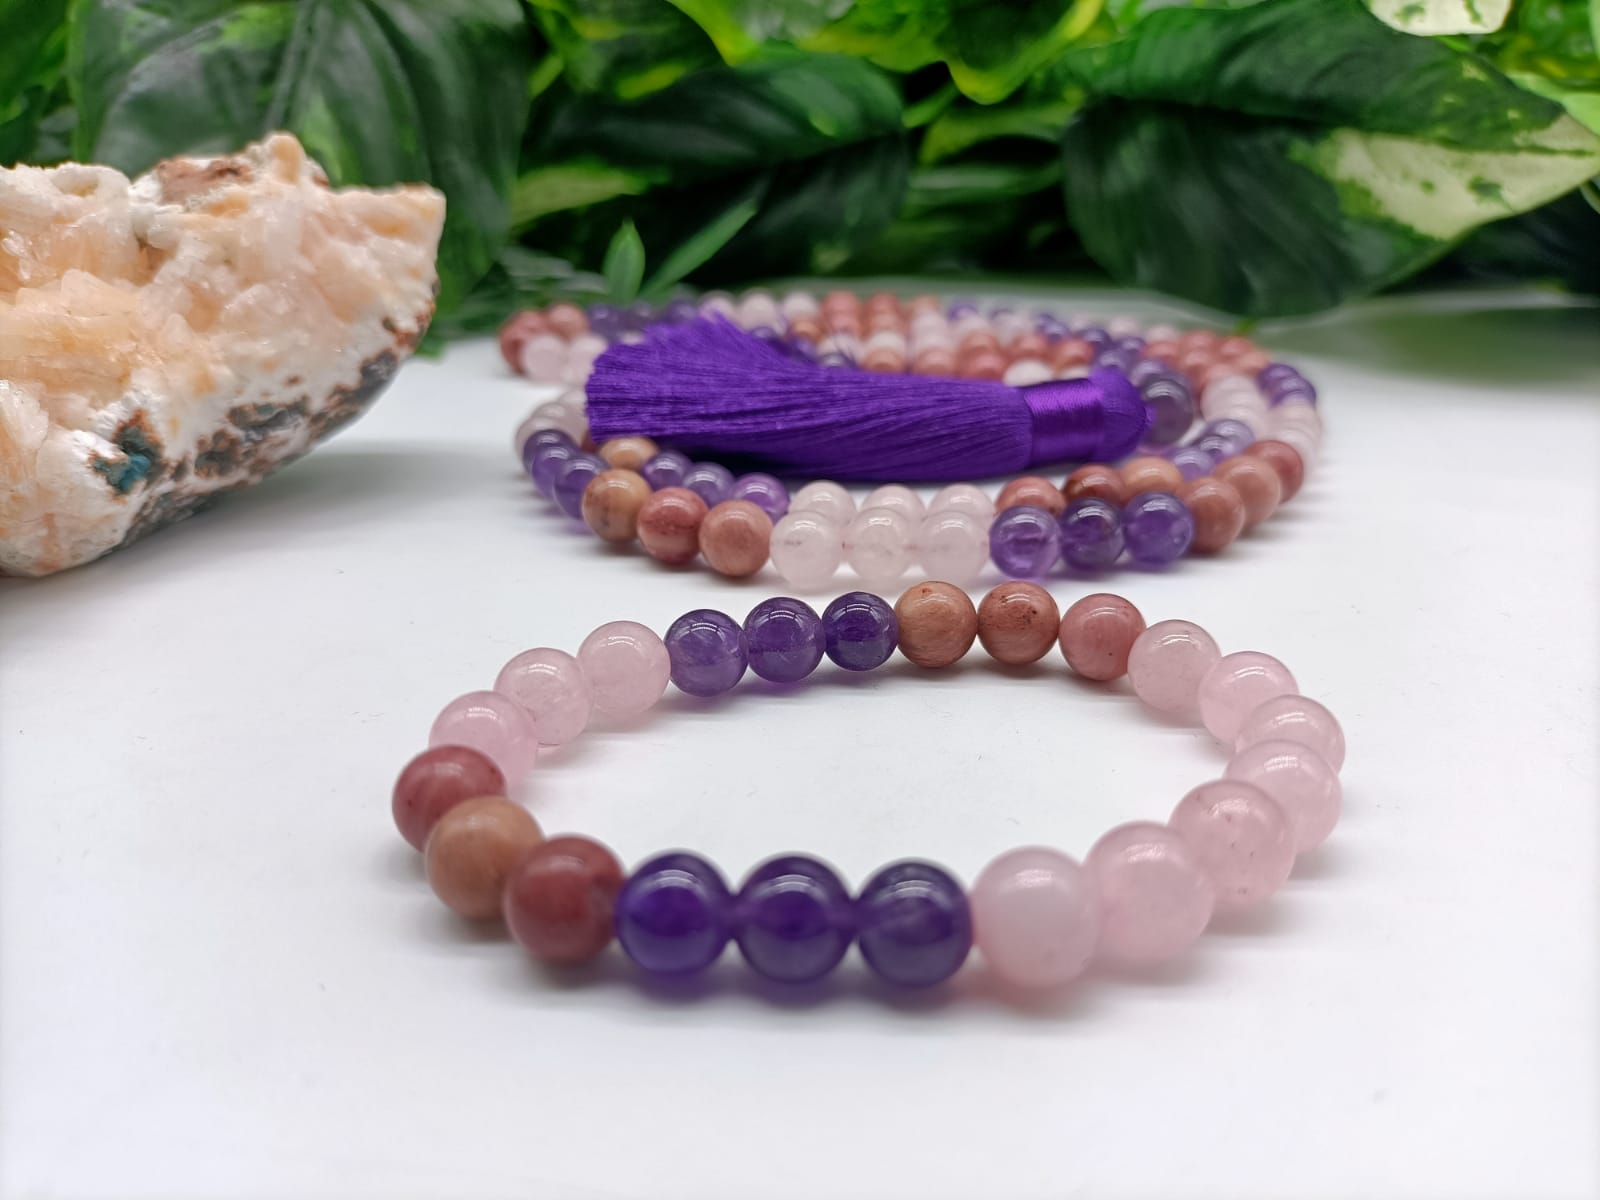 Mala Beads for Protection and Grounding Crystal Wellness